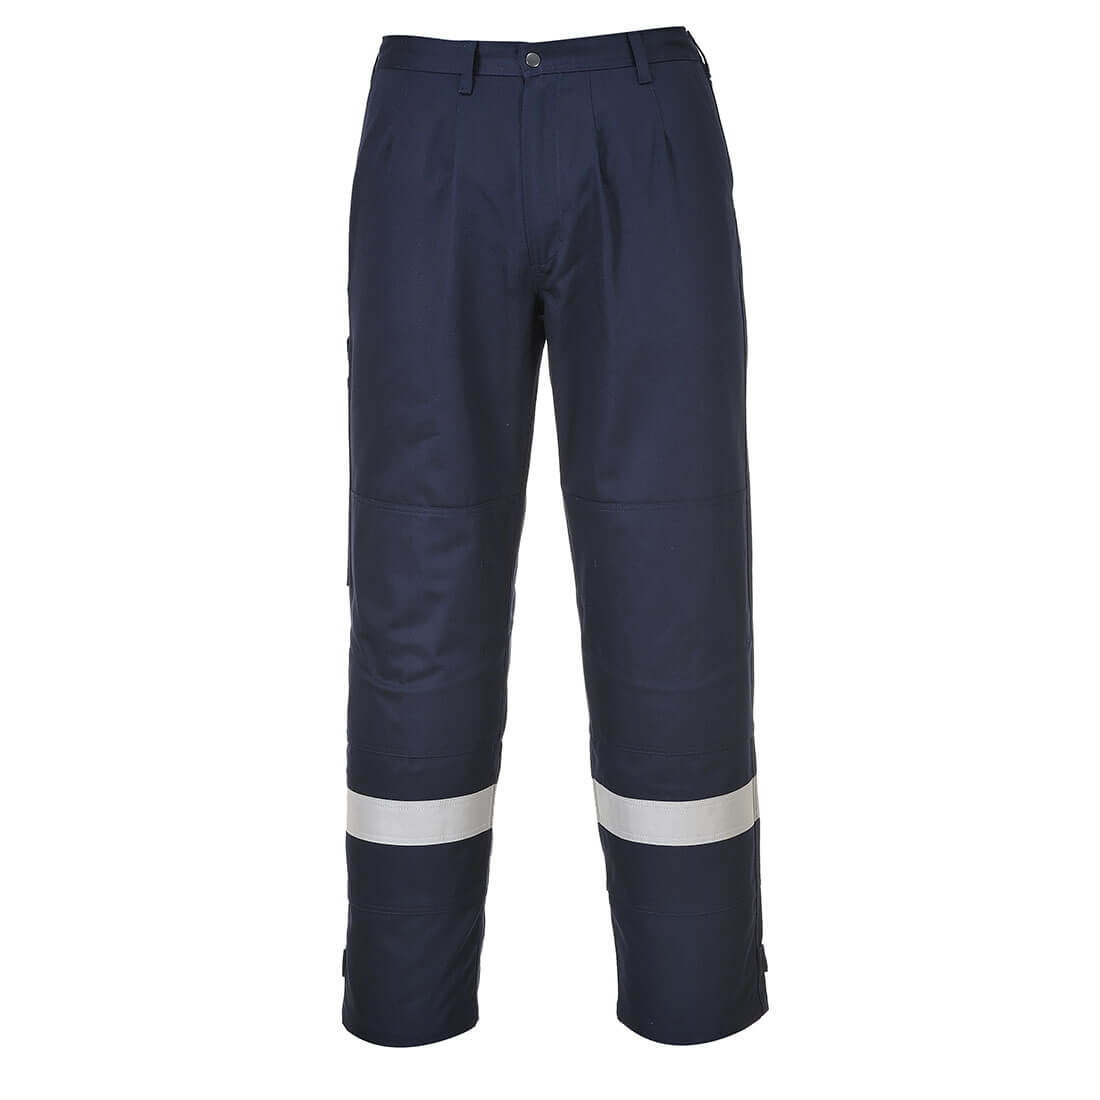 Pantaloni Bizflame Plus - Abbigliamento di protezione